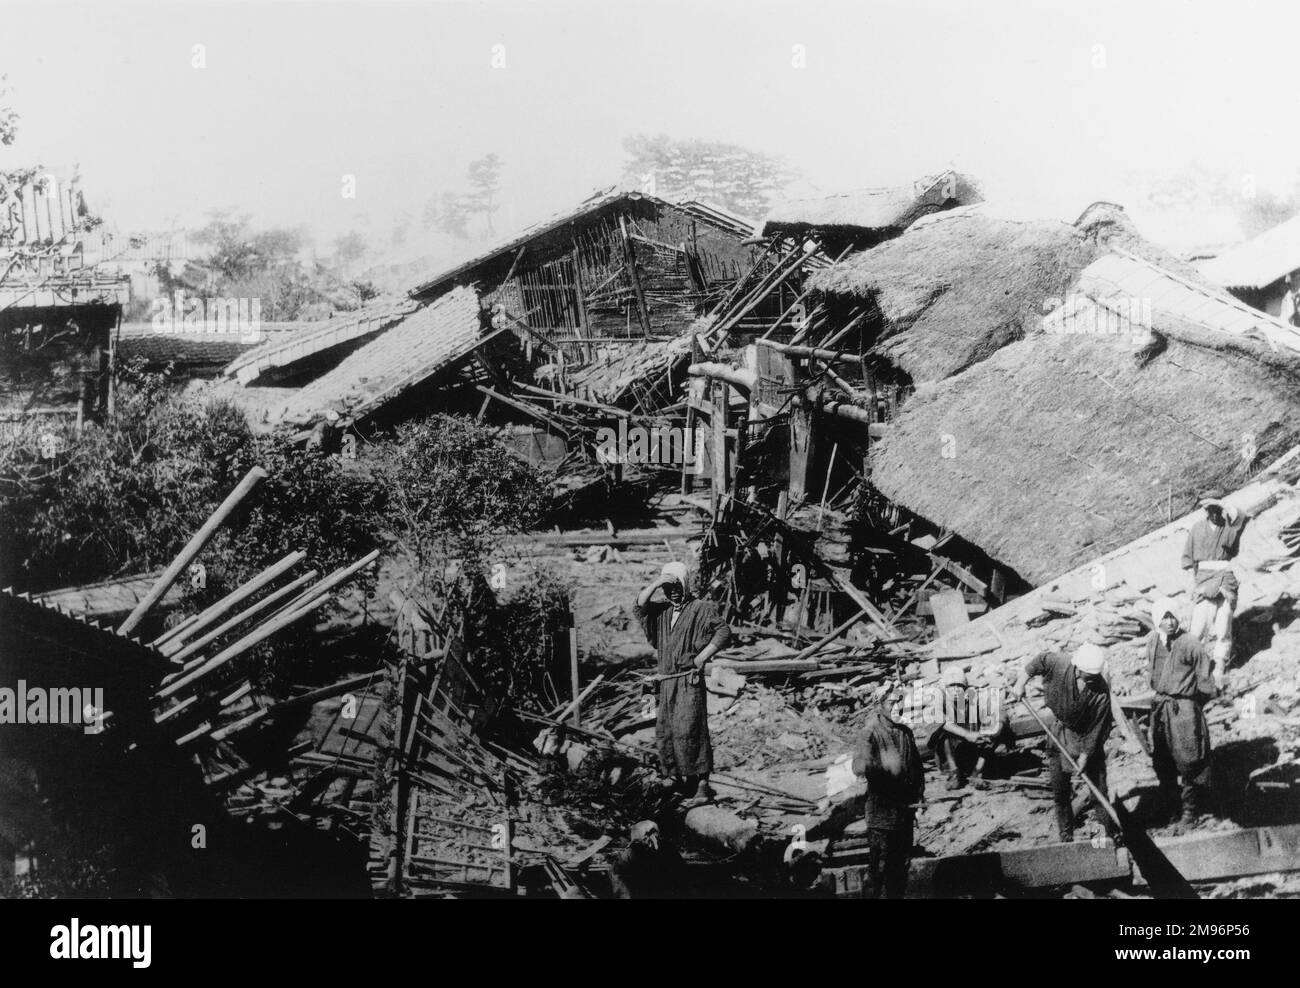 Das Erdbeben von Mino-Owari im Jahr 1891 ließ viele Hunderte von Häusern in Riunen zurück, und ihre Bewohner starben, verletzt, gefangen oder obdachlos. Dies geschah fast allen in der Stadt Biwajima. Stockfoto